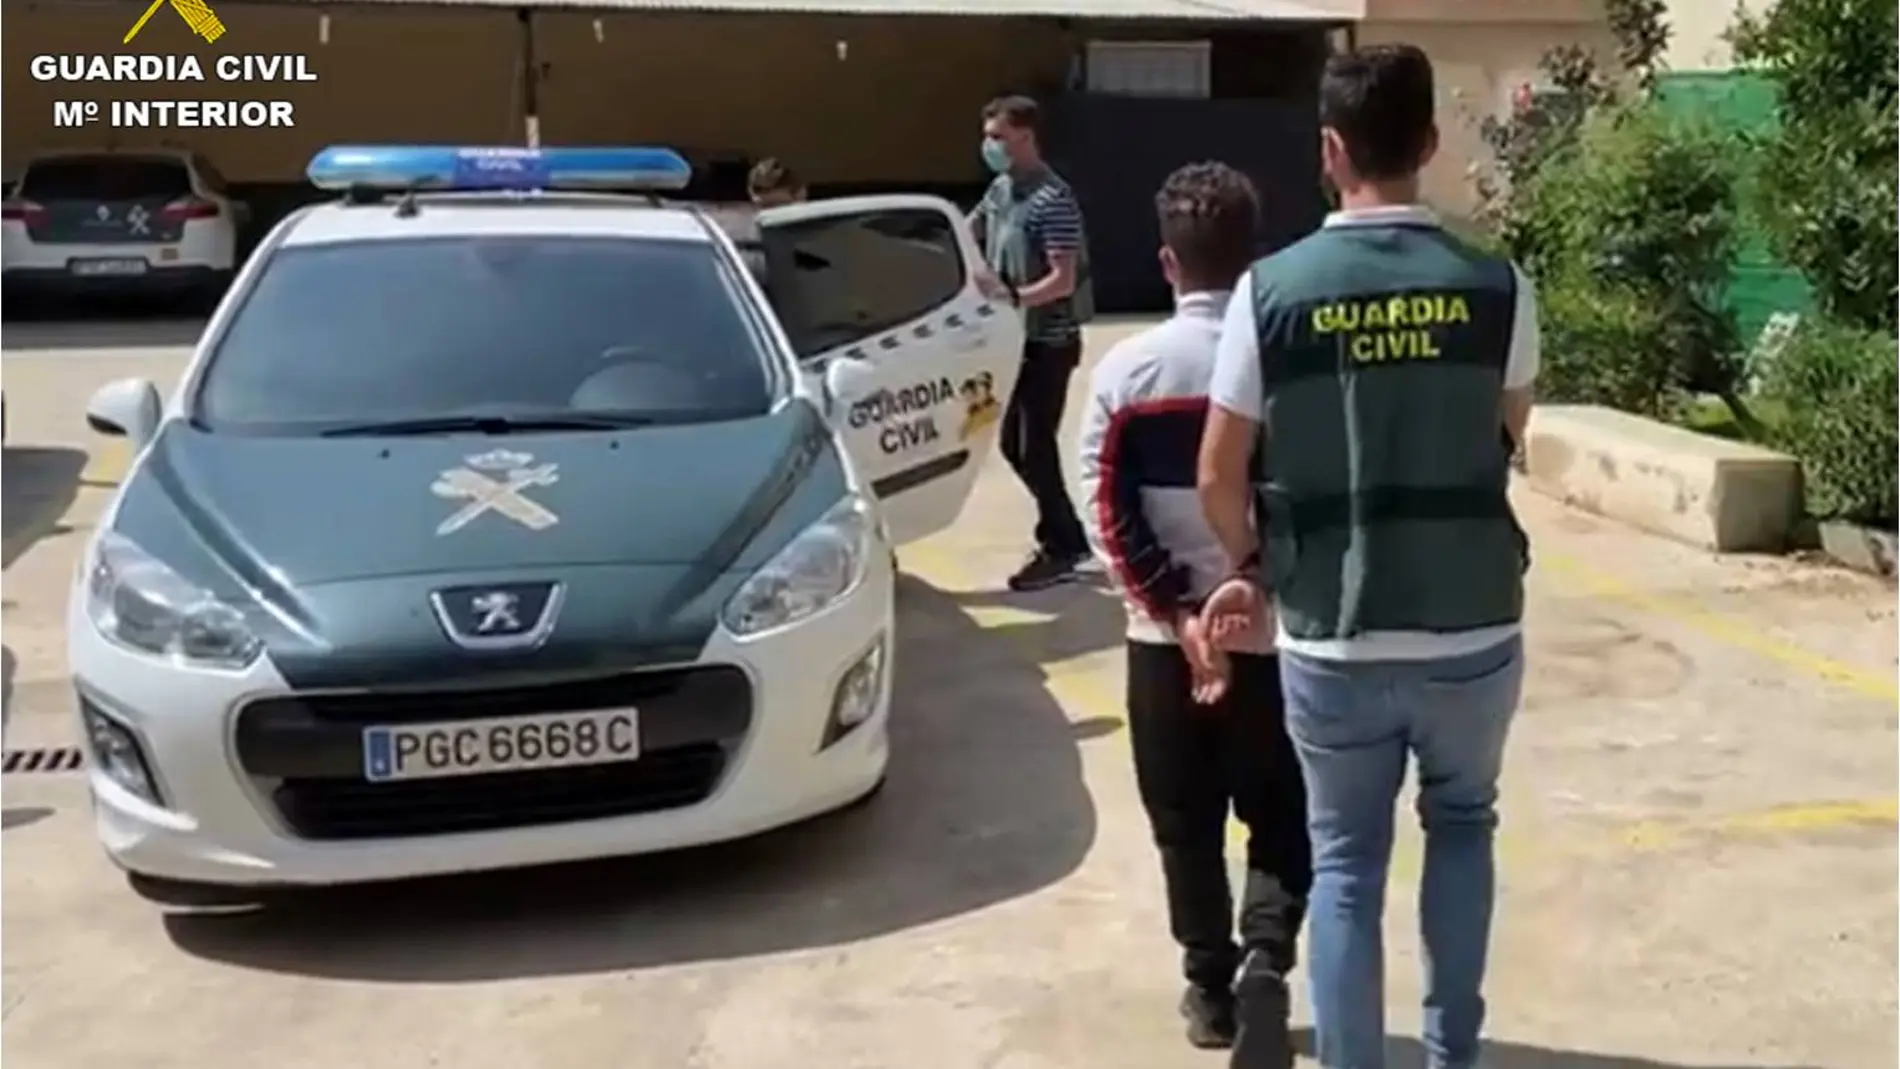 Se les imputan 60 delitos de robo con fuerza en interior de vehículo y 8 de estafa, ocurridos entre las localidades de Callosa de Segura y Bigastro